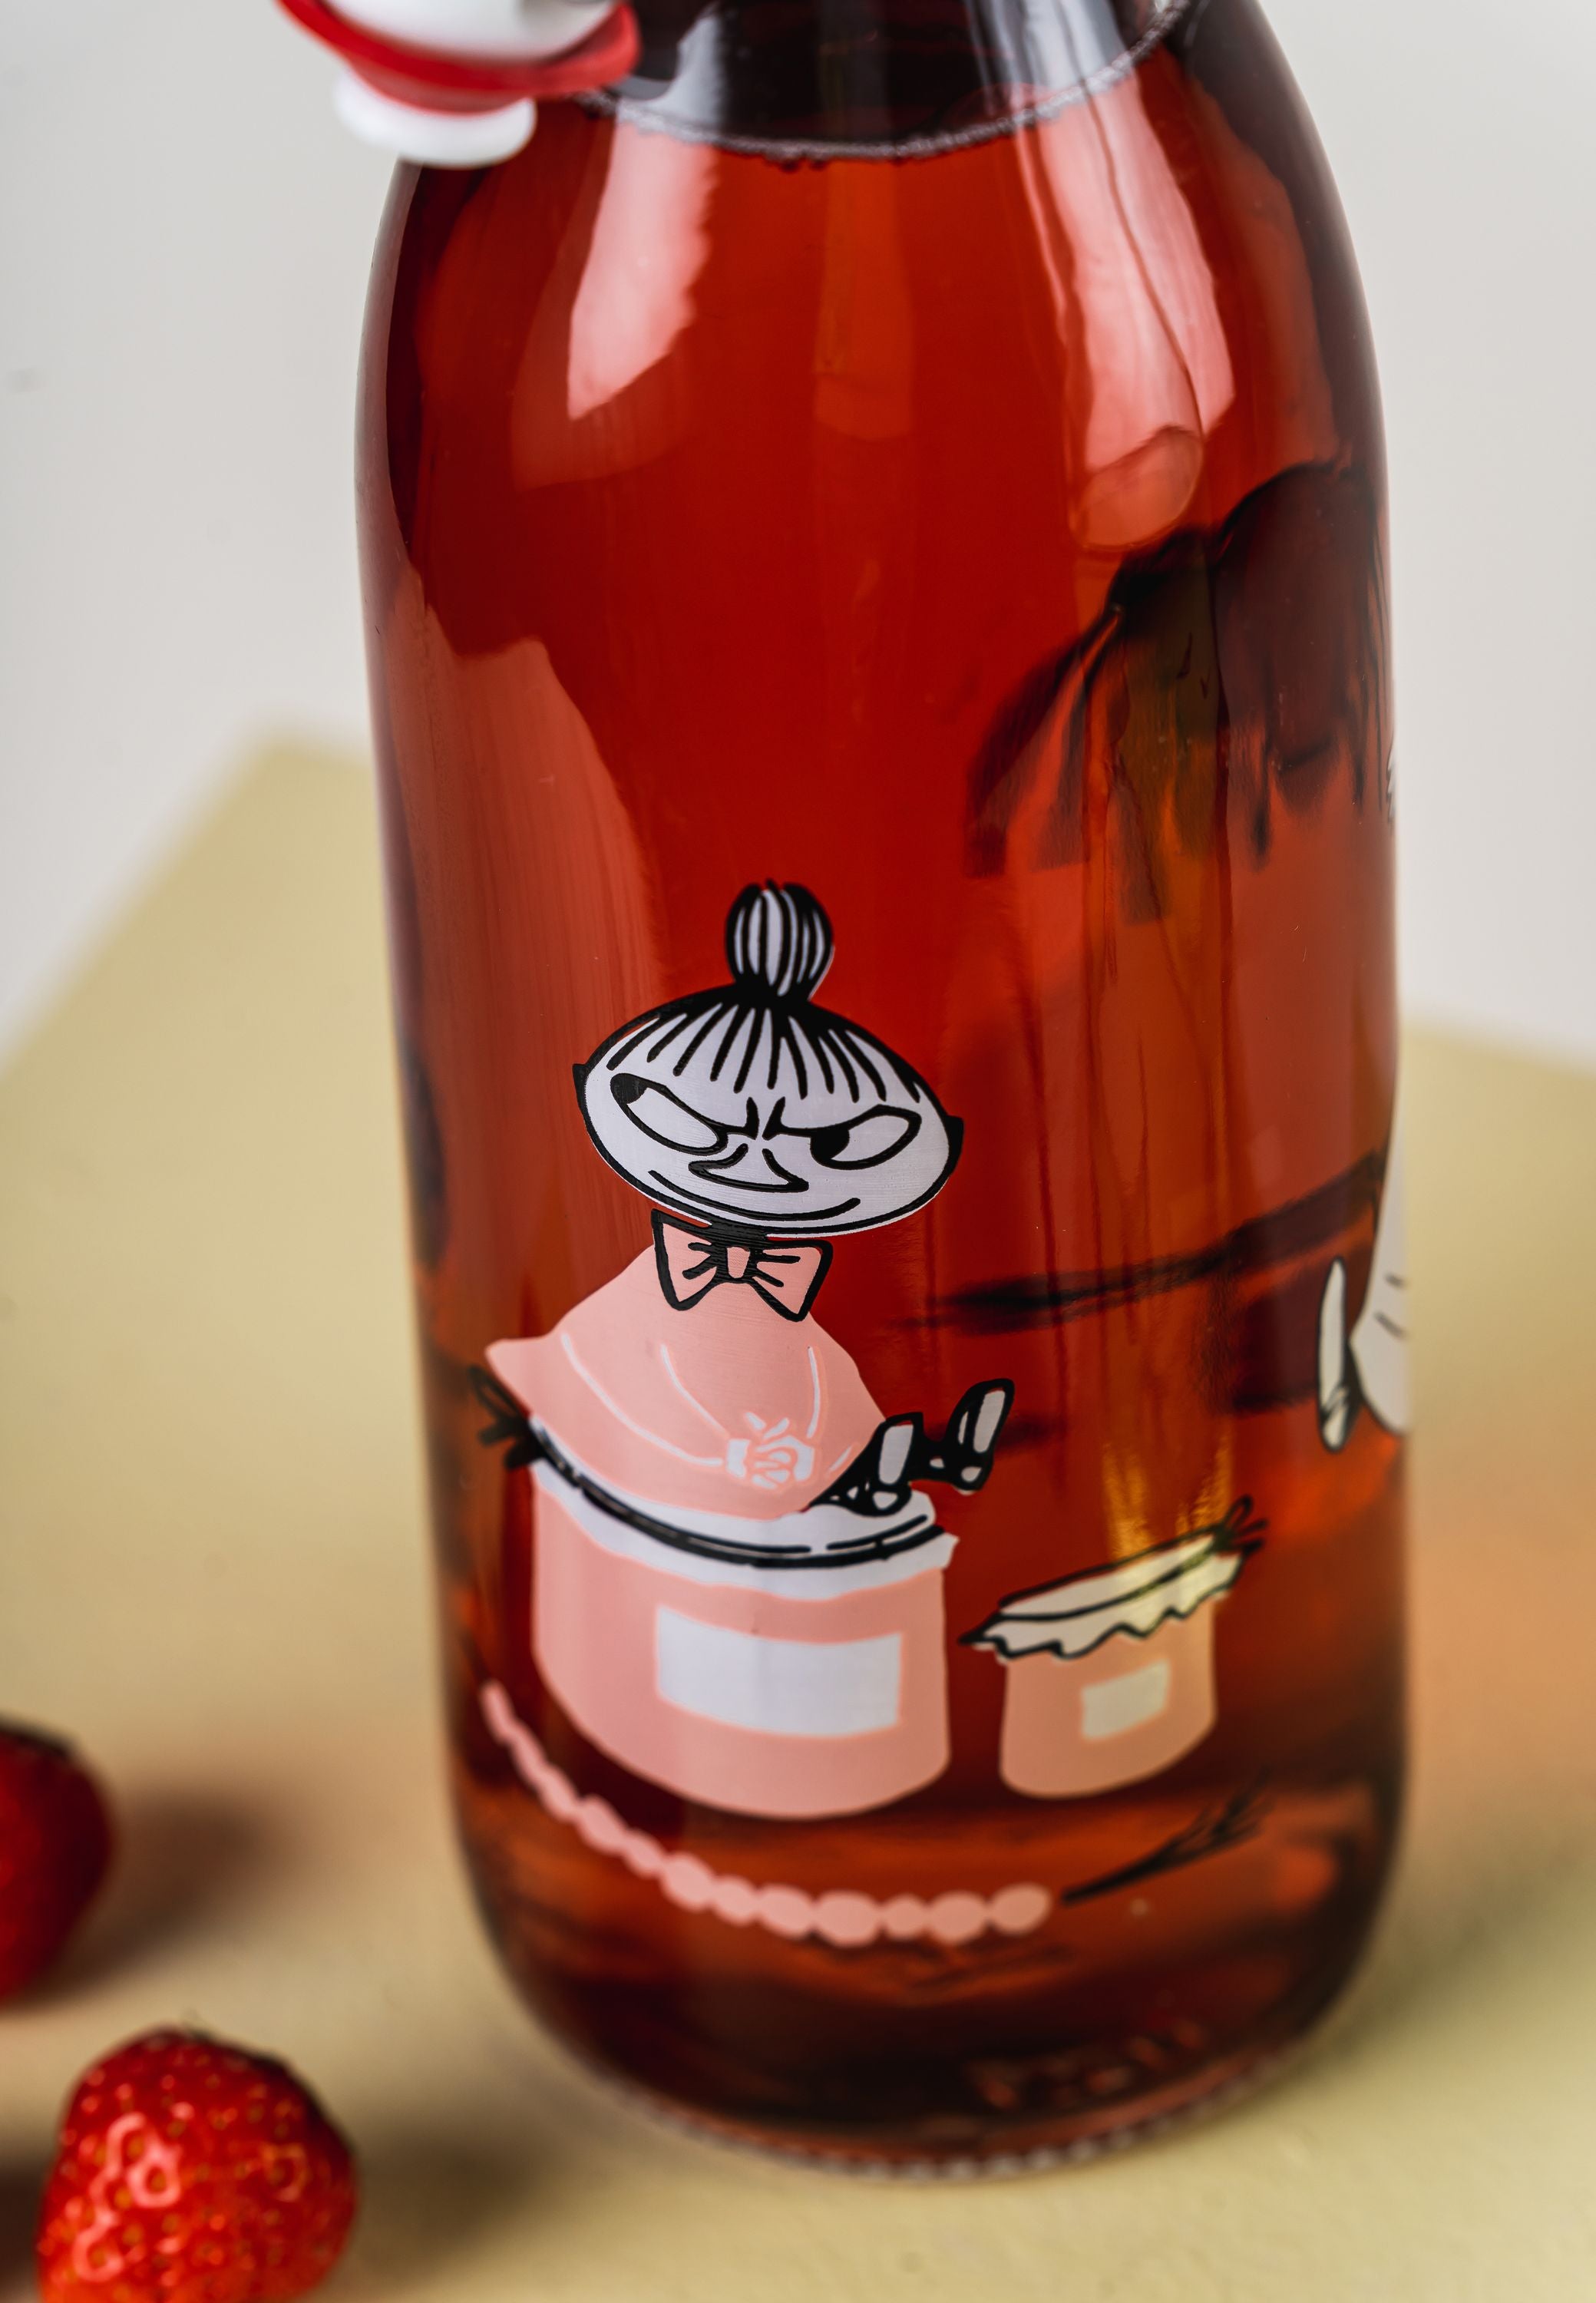 Botella de vidrio de Muurla Moomin, mermelada